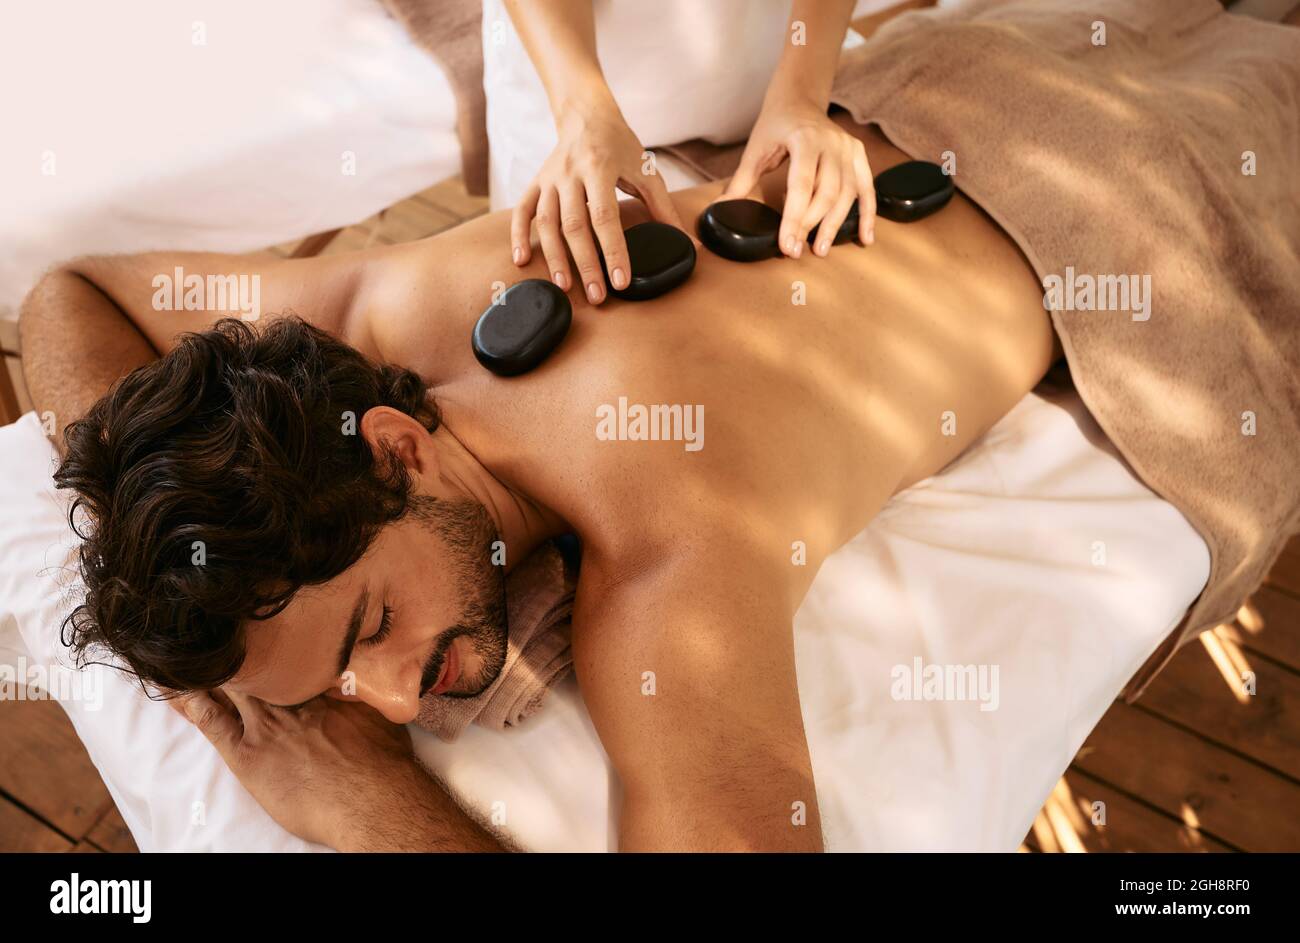 Der gutaussehende Mann im Spa Resort erhält eine Hot Stone Massage. Massagetherapie mit heißen Steinen mit glatten, flachen, beheizten Steinen Stockfoto